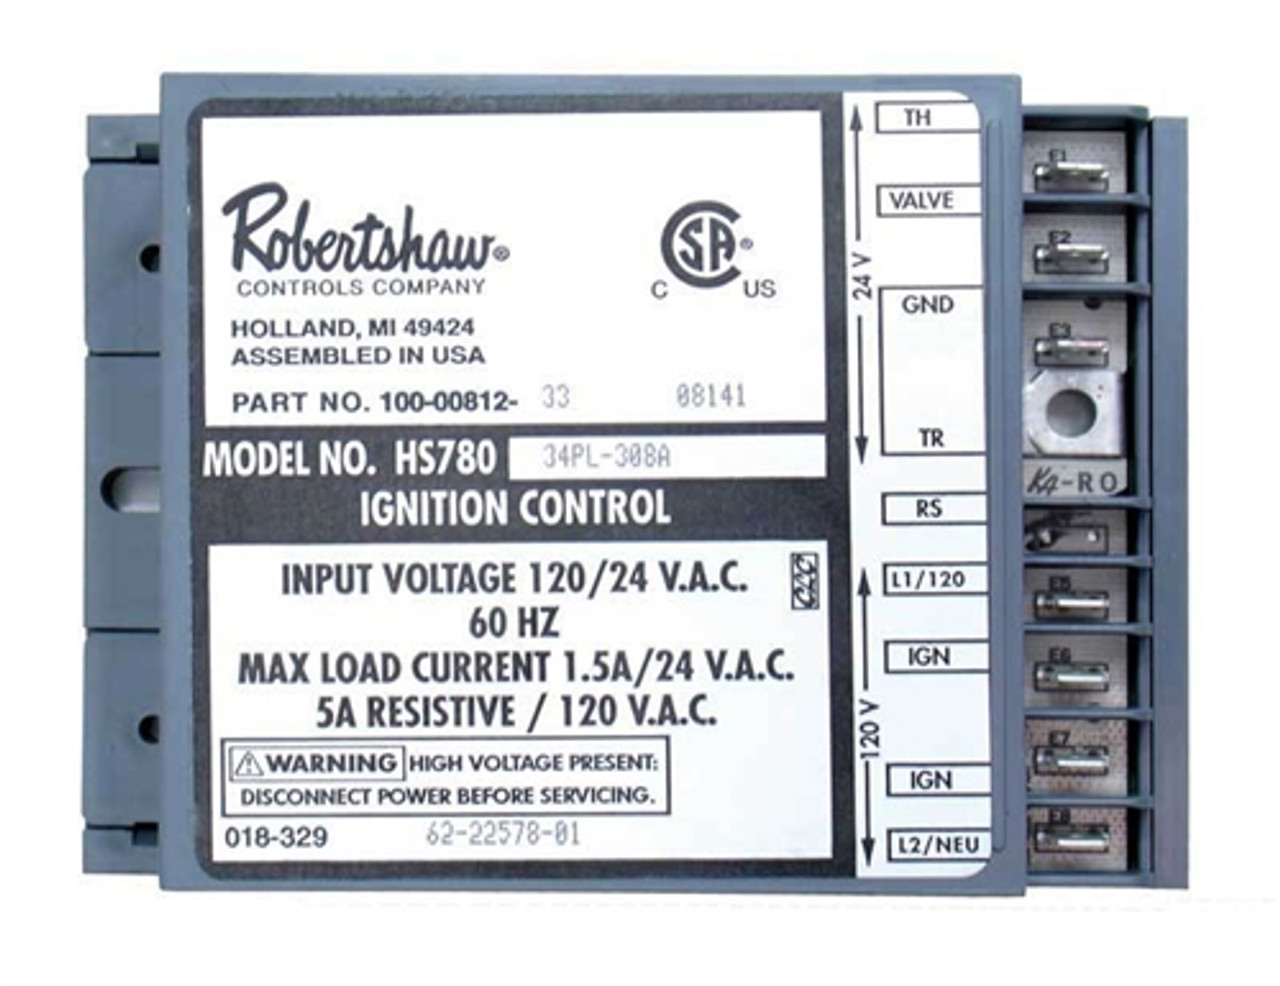 Robertshaw Rheem RUUD Control Board HS780 62-22578-01